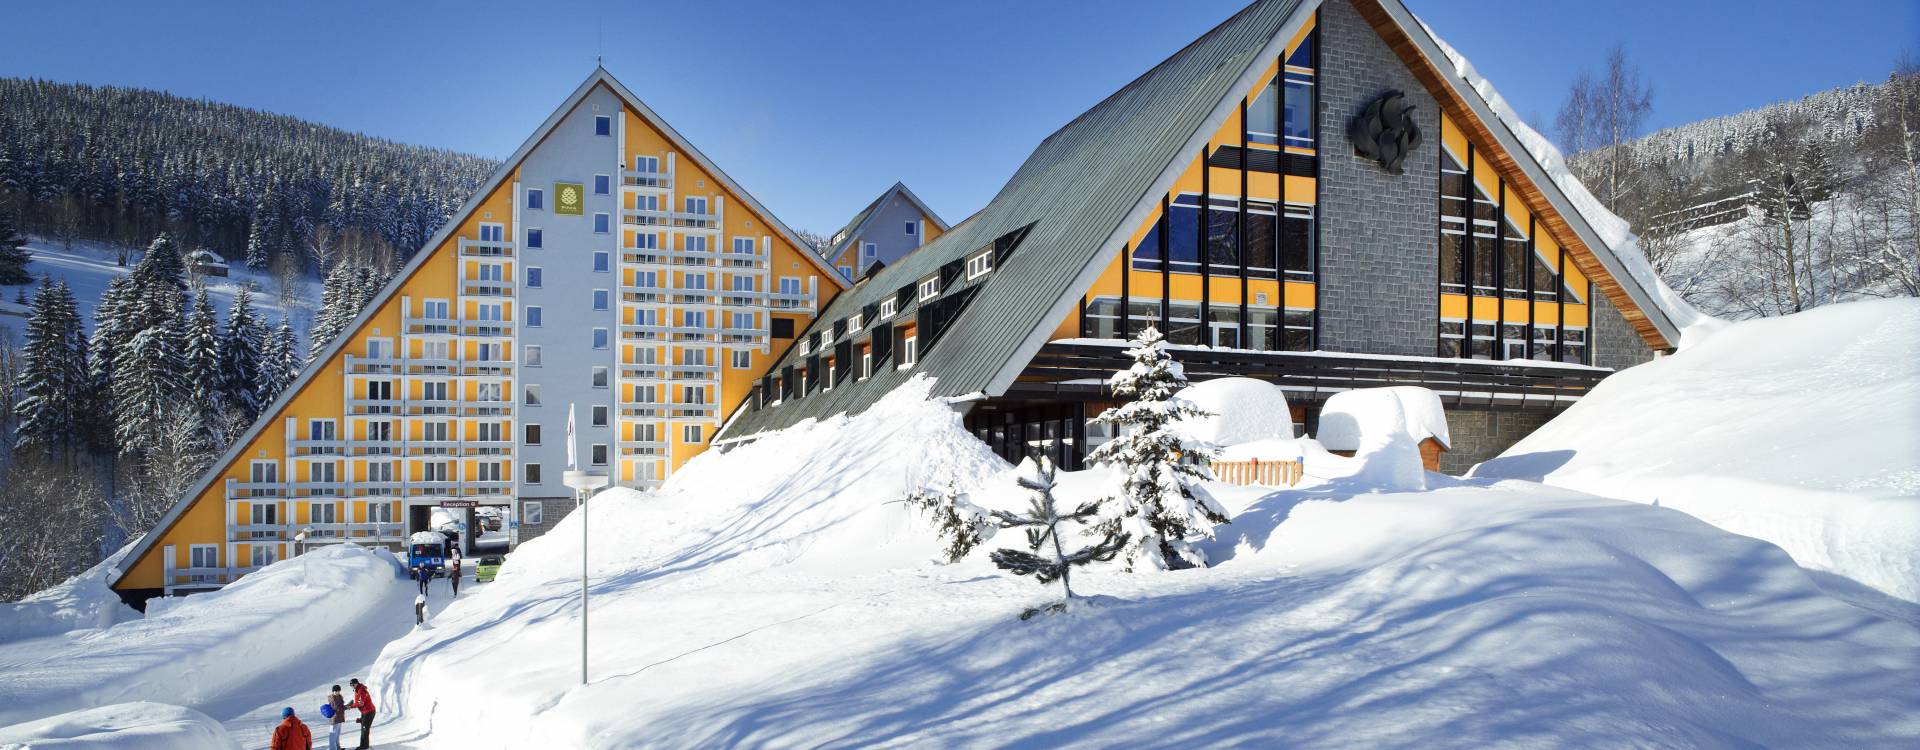 Pinia Hotel & Resort Špindlerův Mlýn - Zimní dovolená ve Špindlu s polopenzí